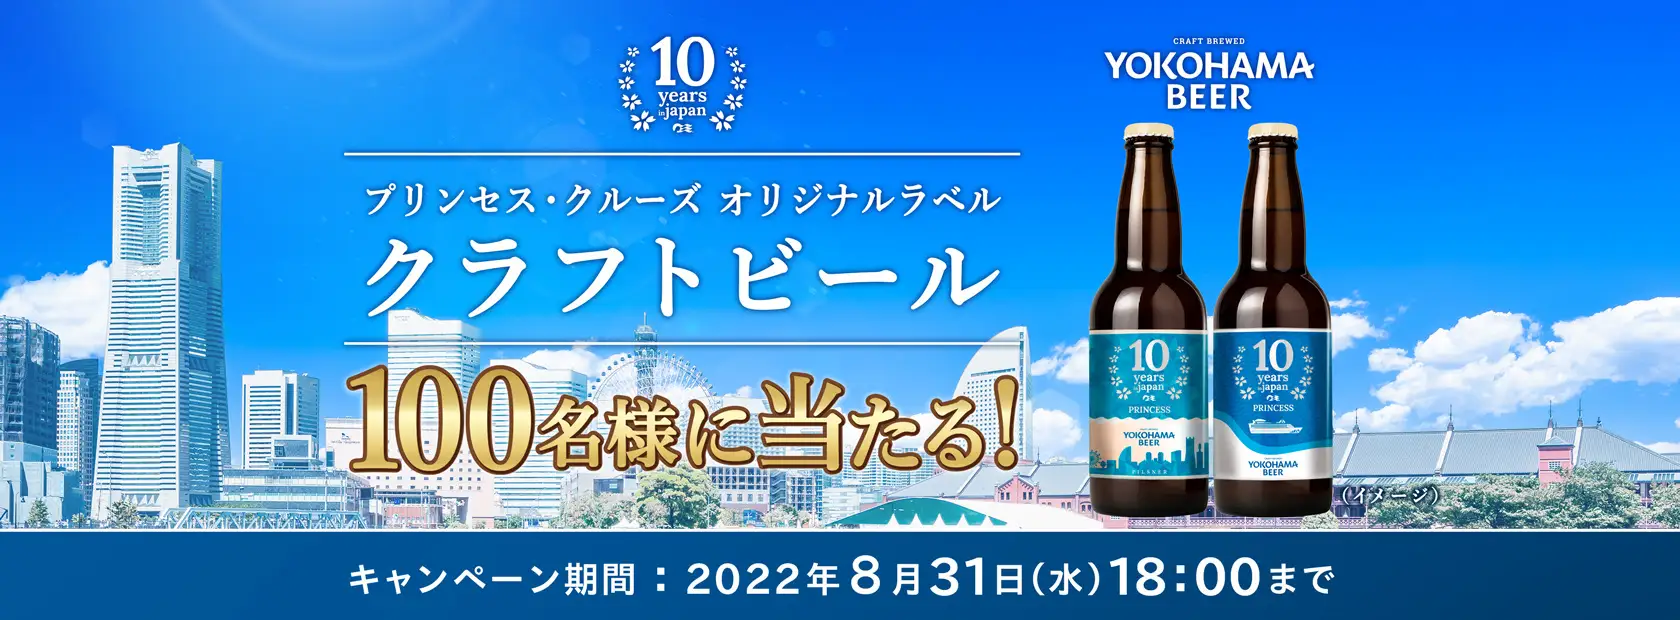 日本発着クルーズ就航10周年記念キャンペーン第2弾 「プリンセス・クルーズ オリジナルラベル クラフトビール」を抽選で100名様にプレゼント